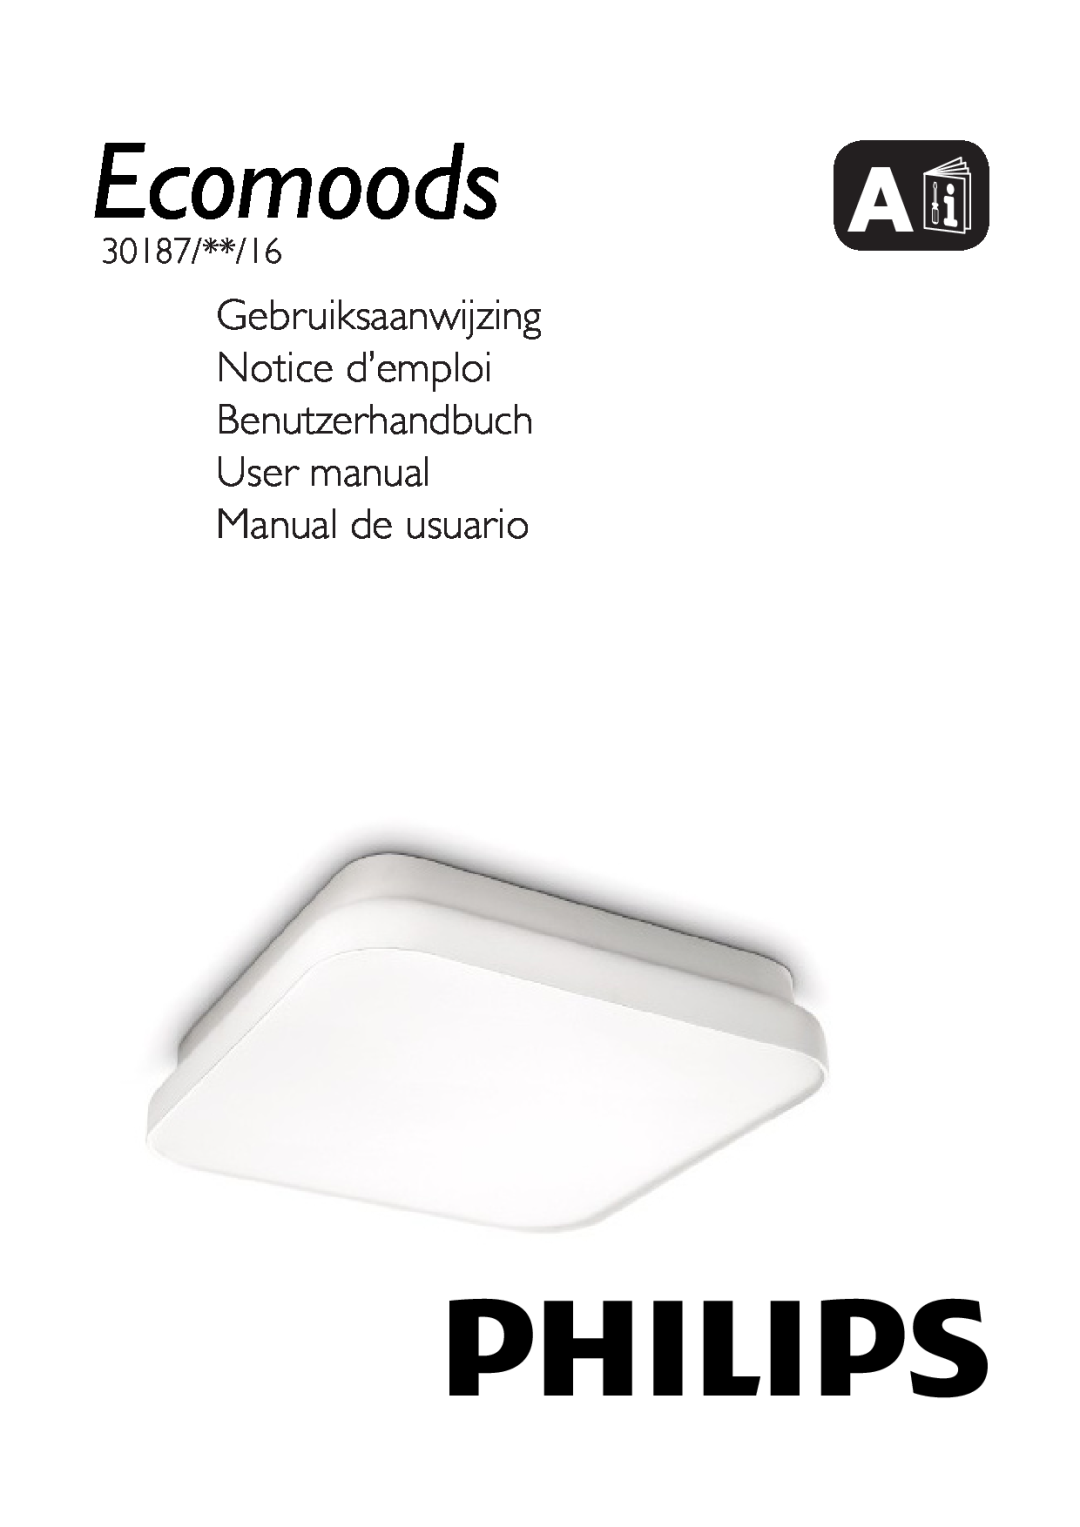 Philips 30187 user manual Gebruiksaanwijzing Notice d’emploi, Benutzerhandbuch User manual Manual de usuario, Ecomoods A 